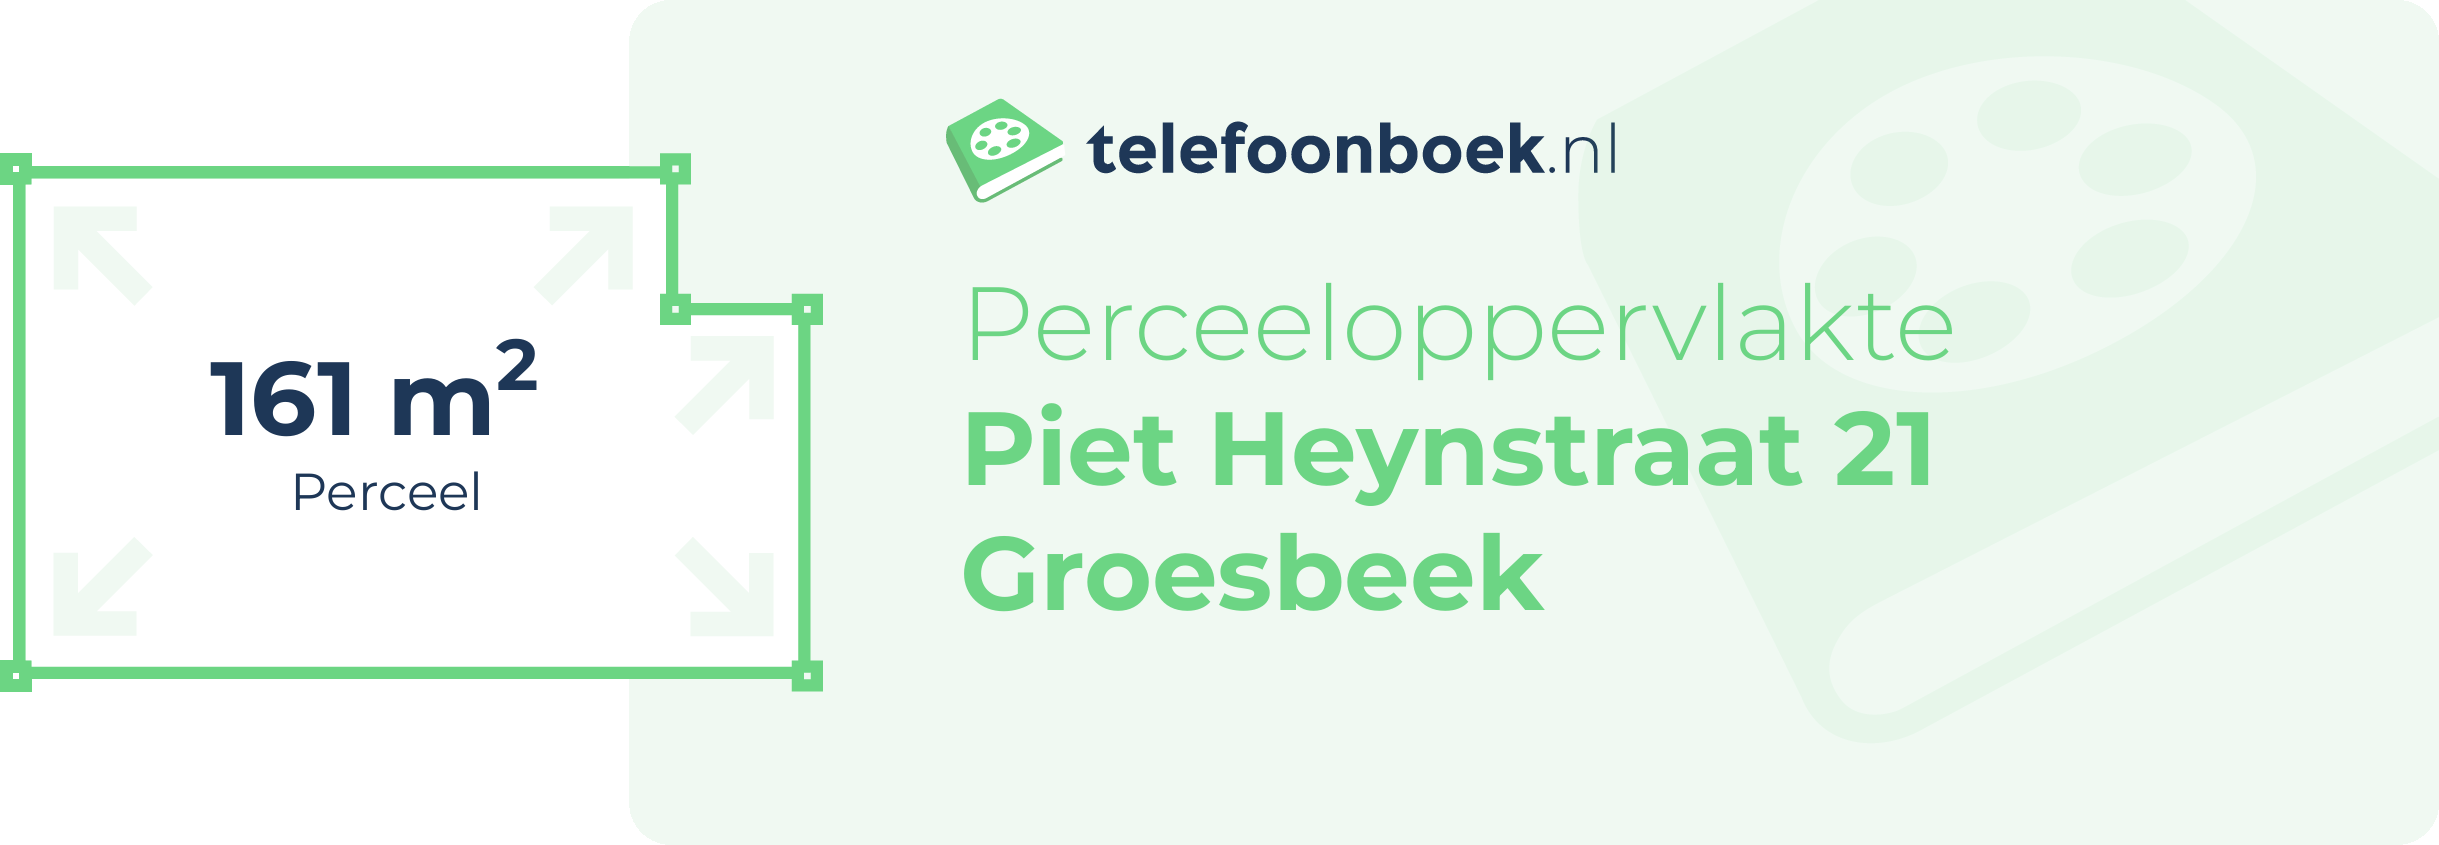 Perceeloppervlakte Piet Heynstraat 21 Groesbeek